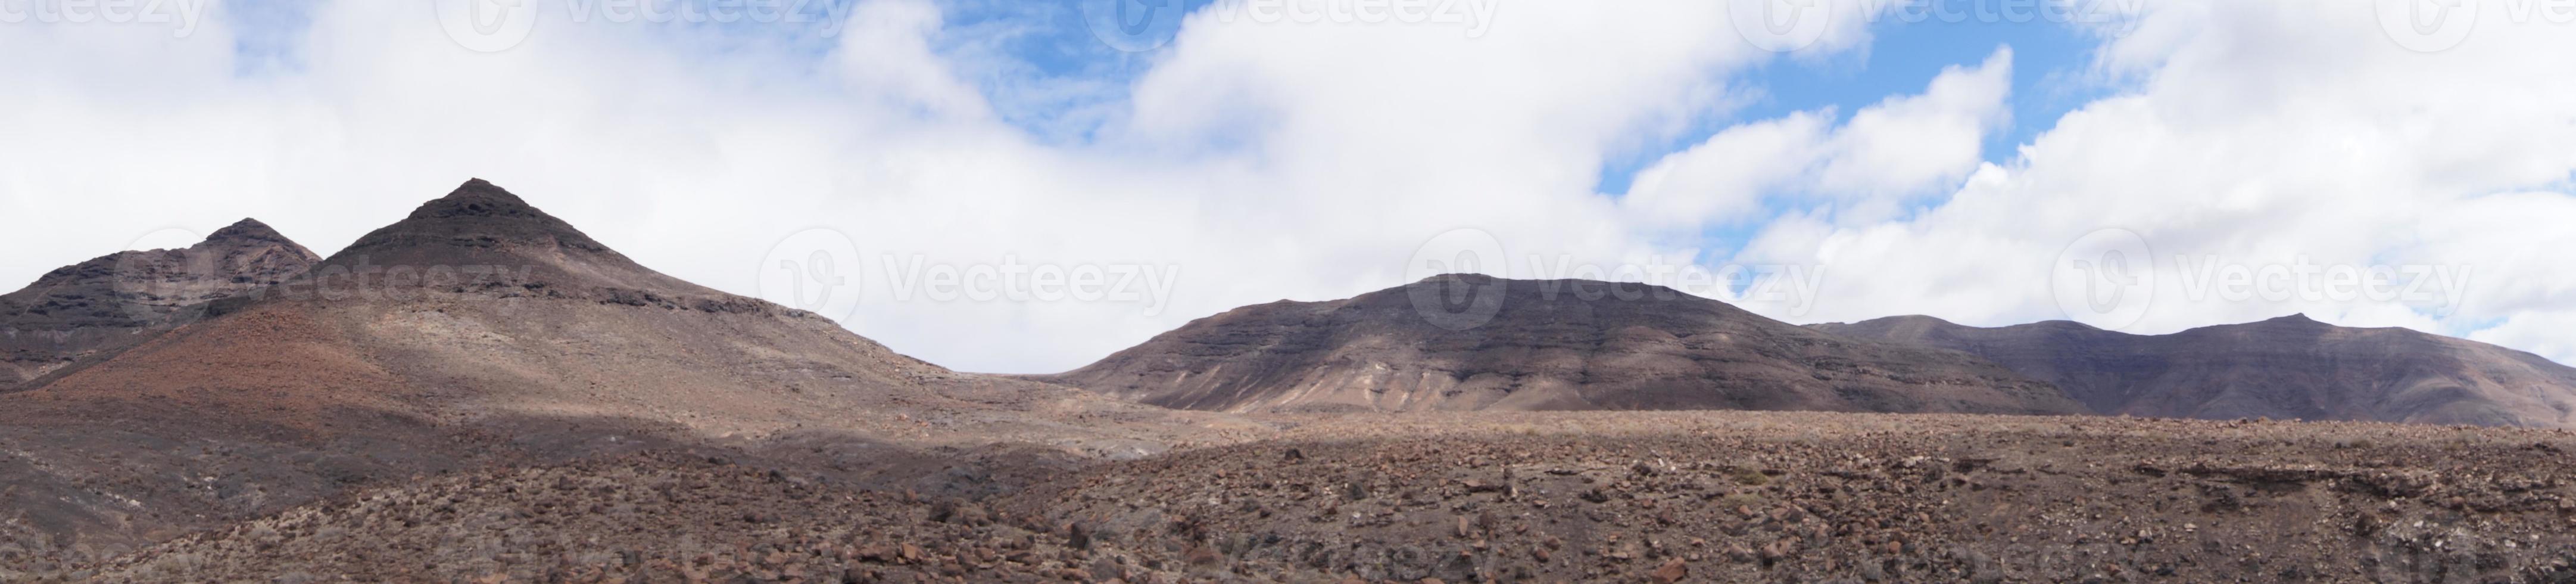 Vulkanberge von Fuerteventura - Spanien foto